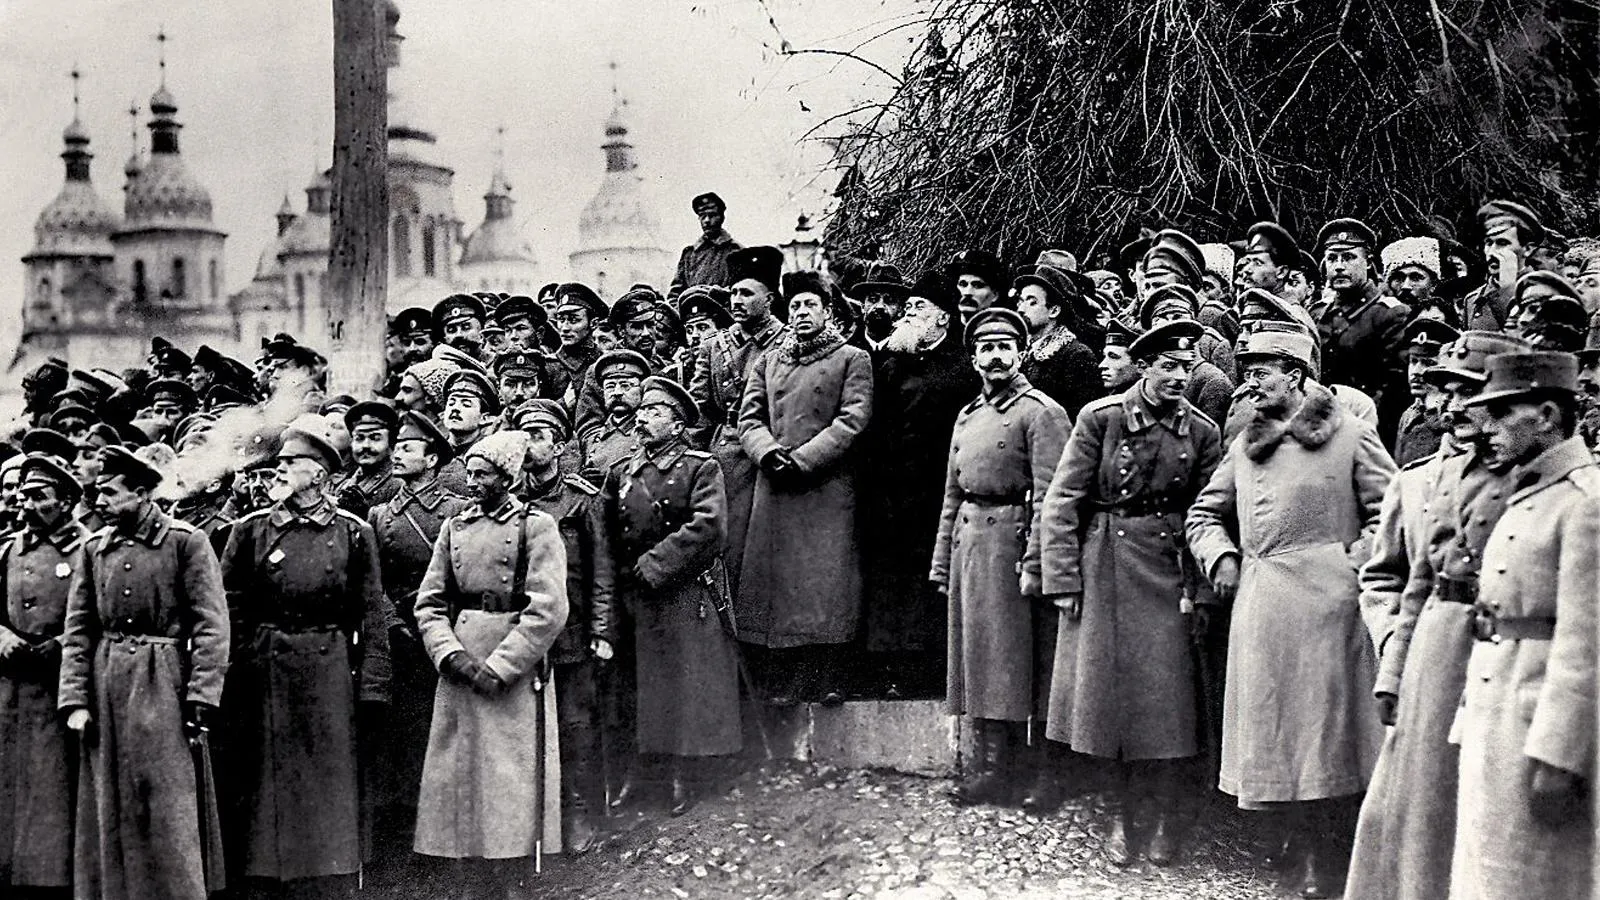 Митинг на III Всеукраинском военном съезде, 2-12 ноября 1917 года. Среди присутствующих в центре можно разглядеть Симона Петлюру и Михаила Грушевского. Справа — офицеры французской, бельгийской и румынской военных миссий